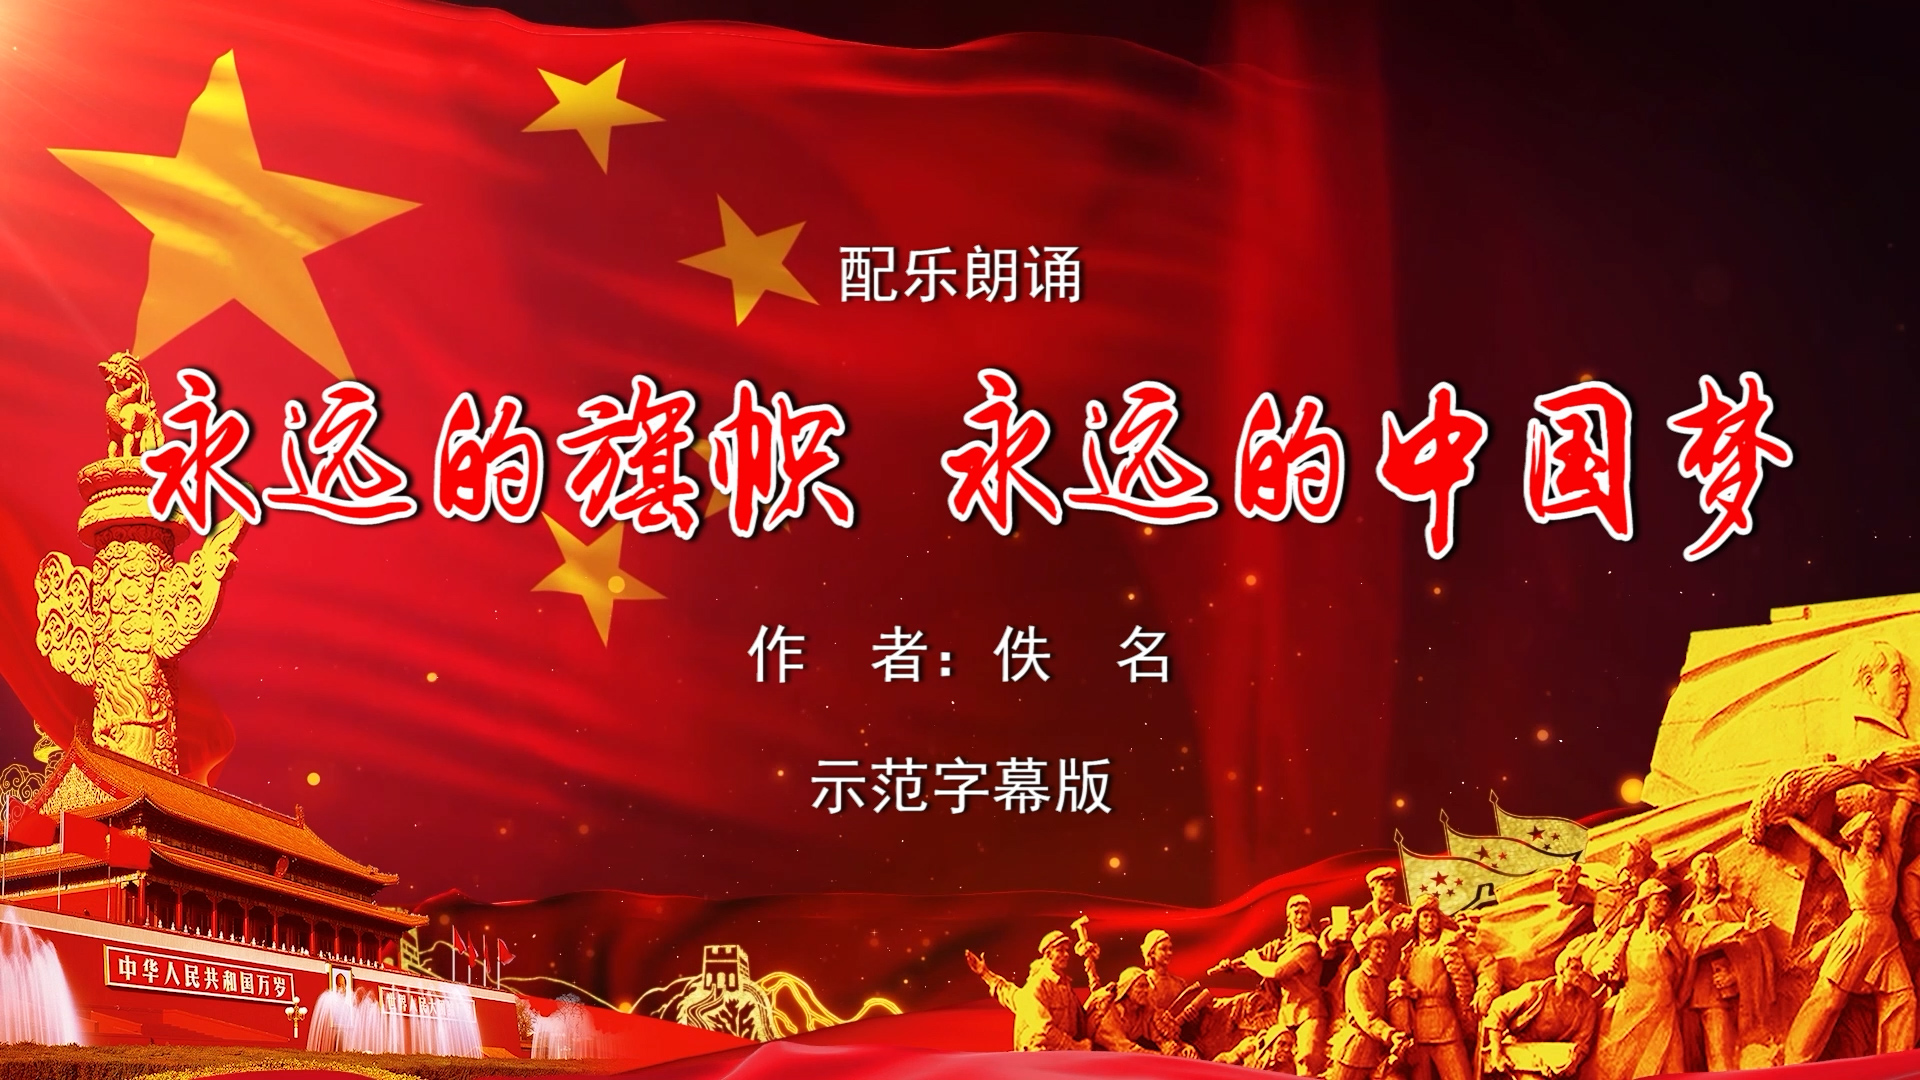 永远的旗帜 永远的中国梦 双人诗歌朗诵配乐伴奏